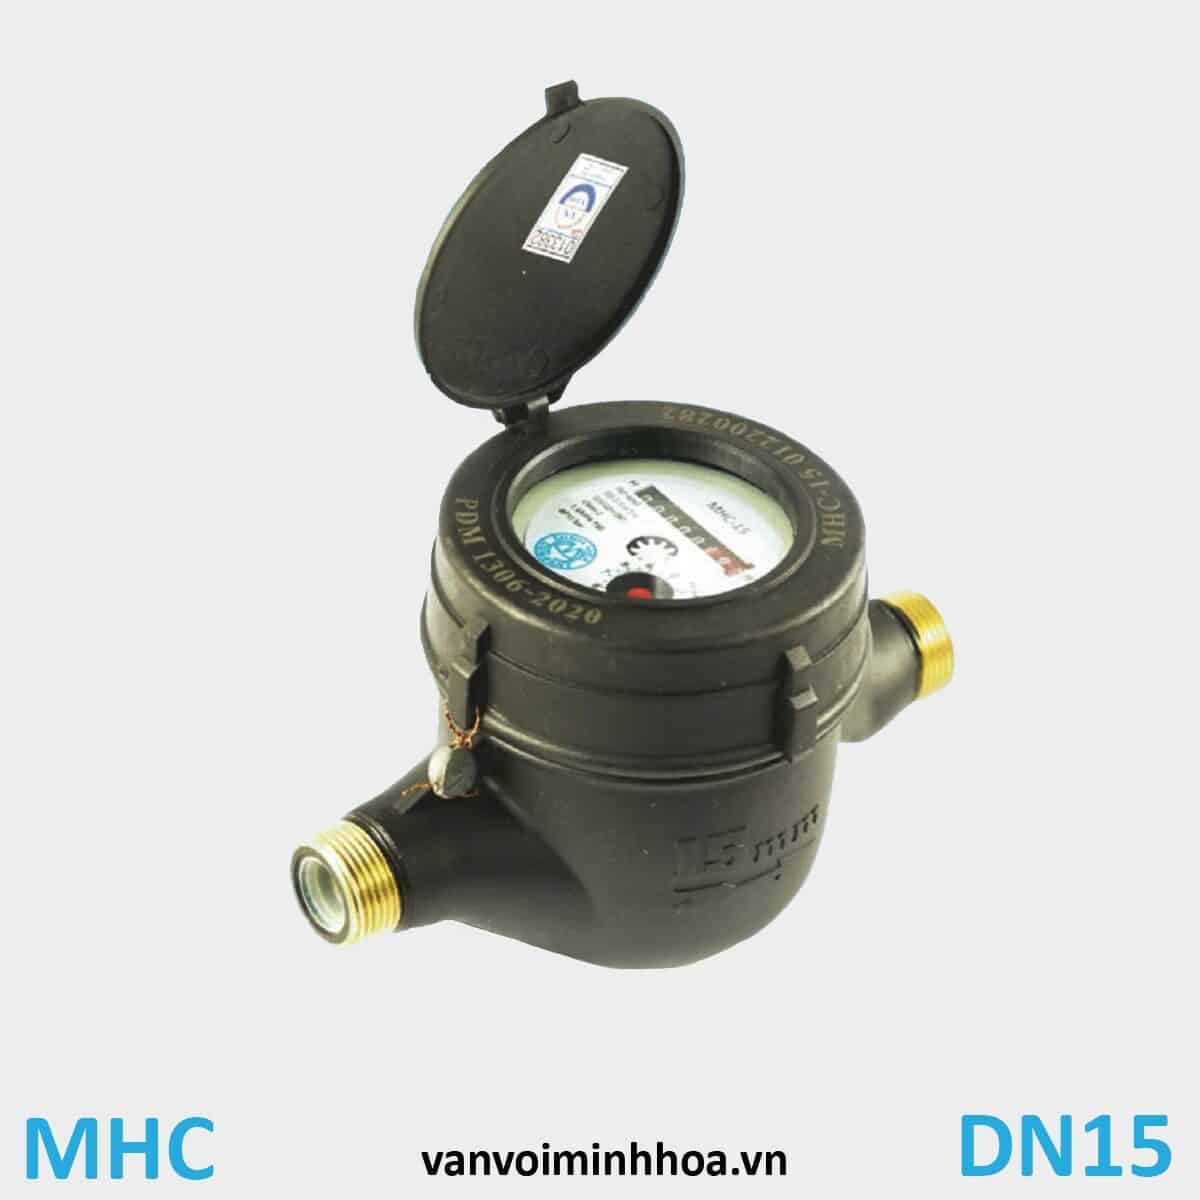 Đồng hồ nước Mình Hòa MHC phi 21 DN15 Thân nhựa